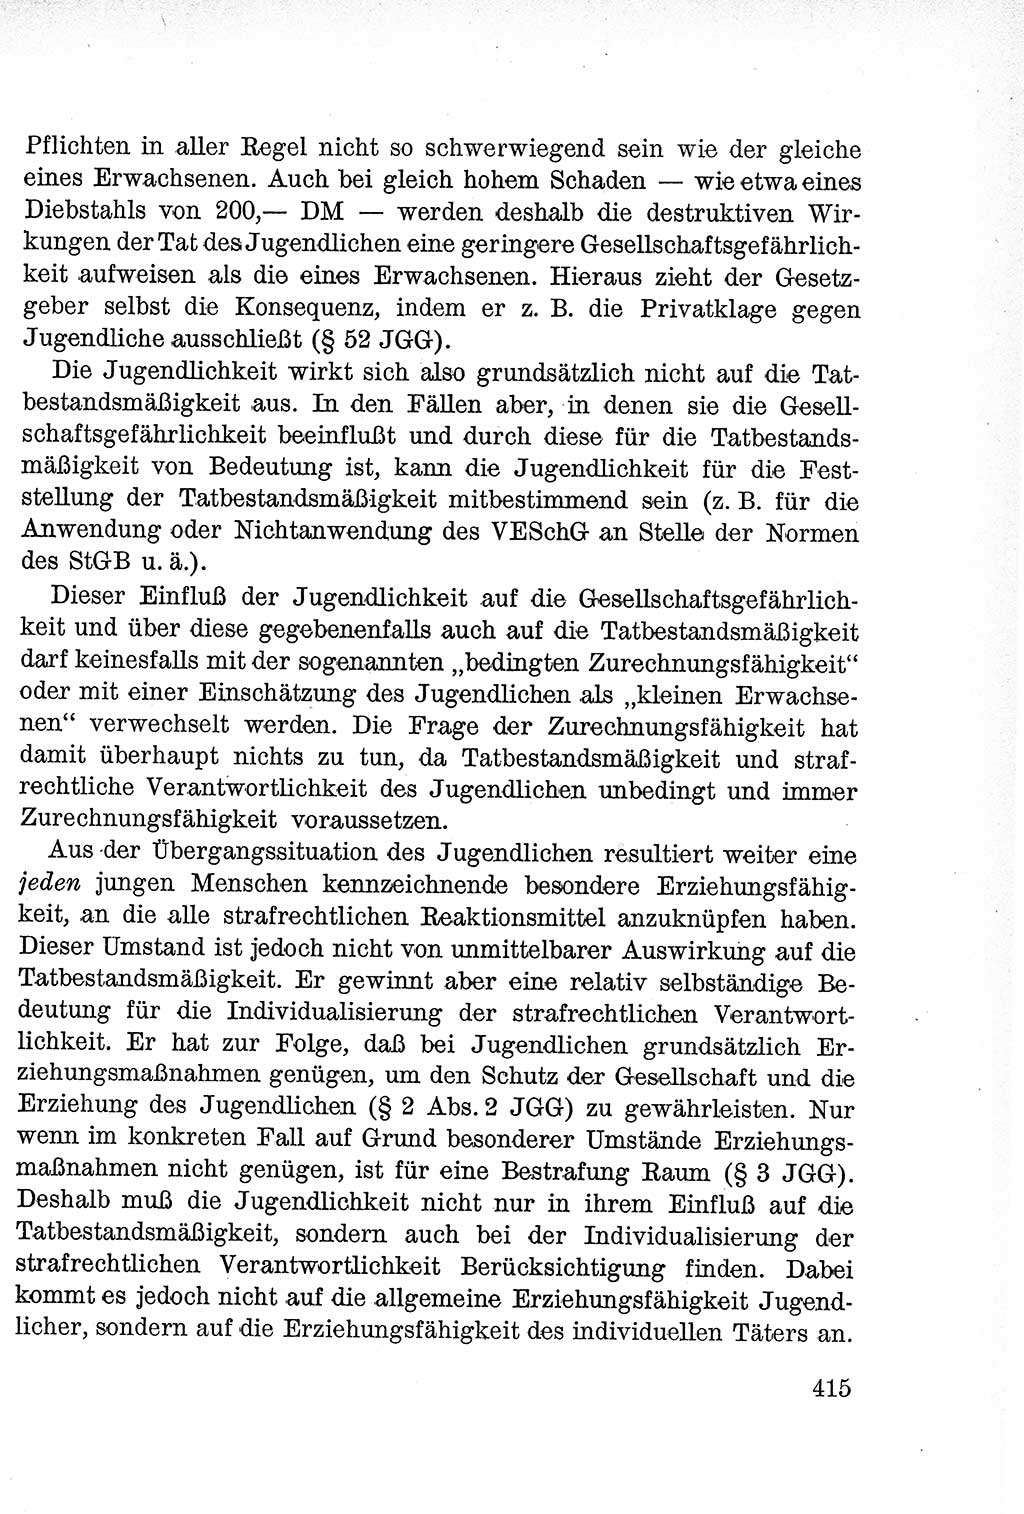 Lehrbuch des Strafrechts der Deutschen Demokratischen Republik (DDR), Allgemeiner Teil 1957, Seite 415 (Lb. Strafr. DDR AT 1957, S. 415)